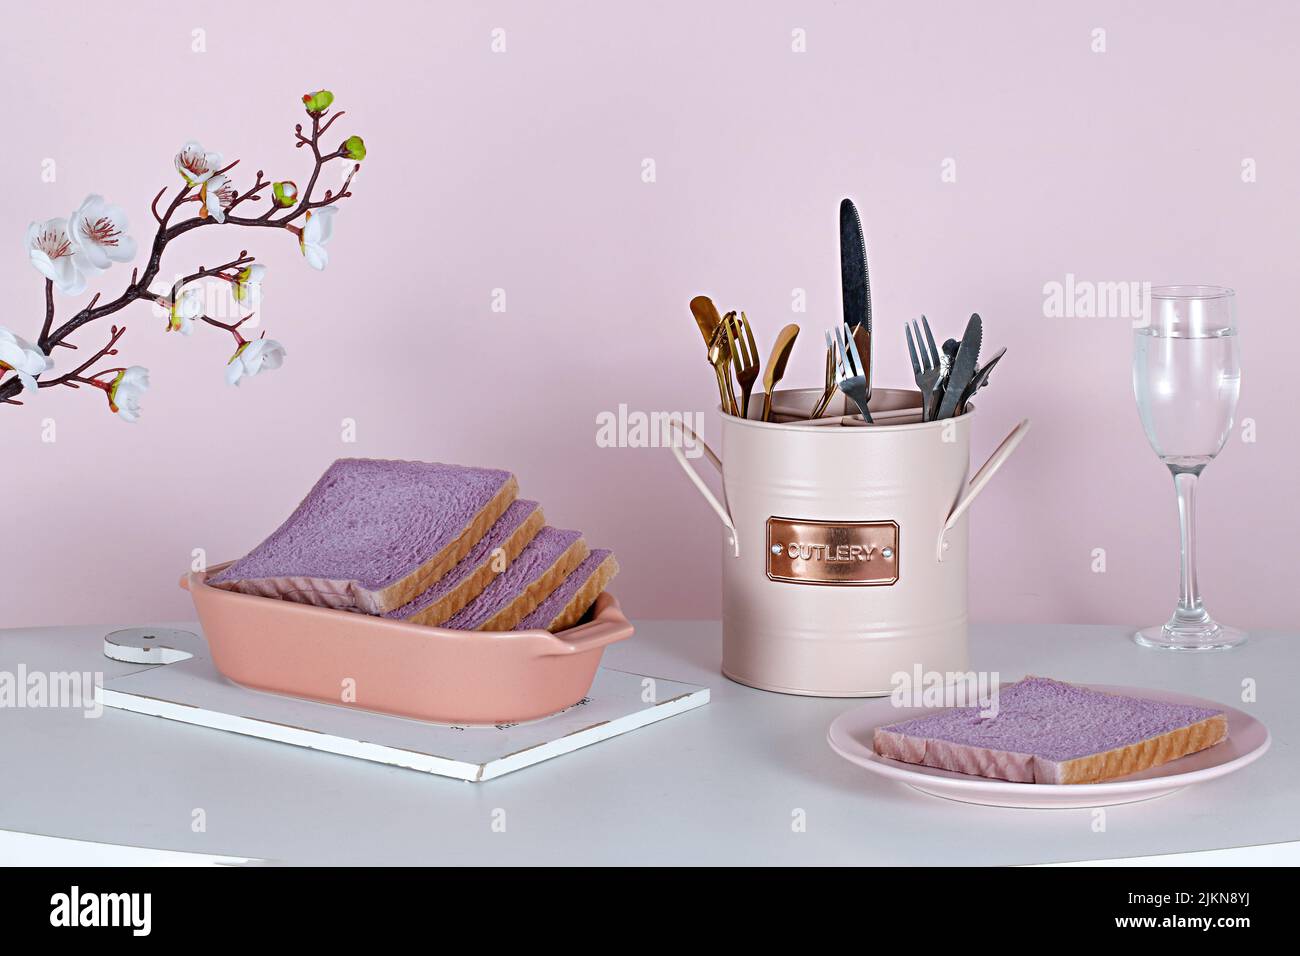 Un bel tavolo estetico con pane dolce viola, un set di posate e fiori su sfondo rosa Foto Stock